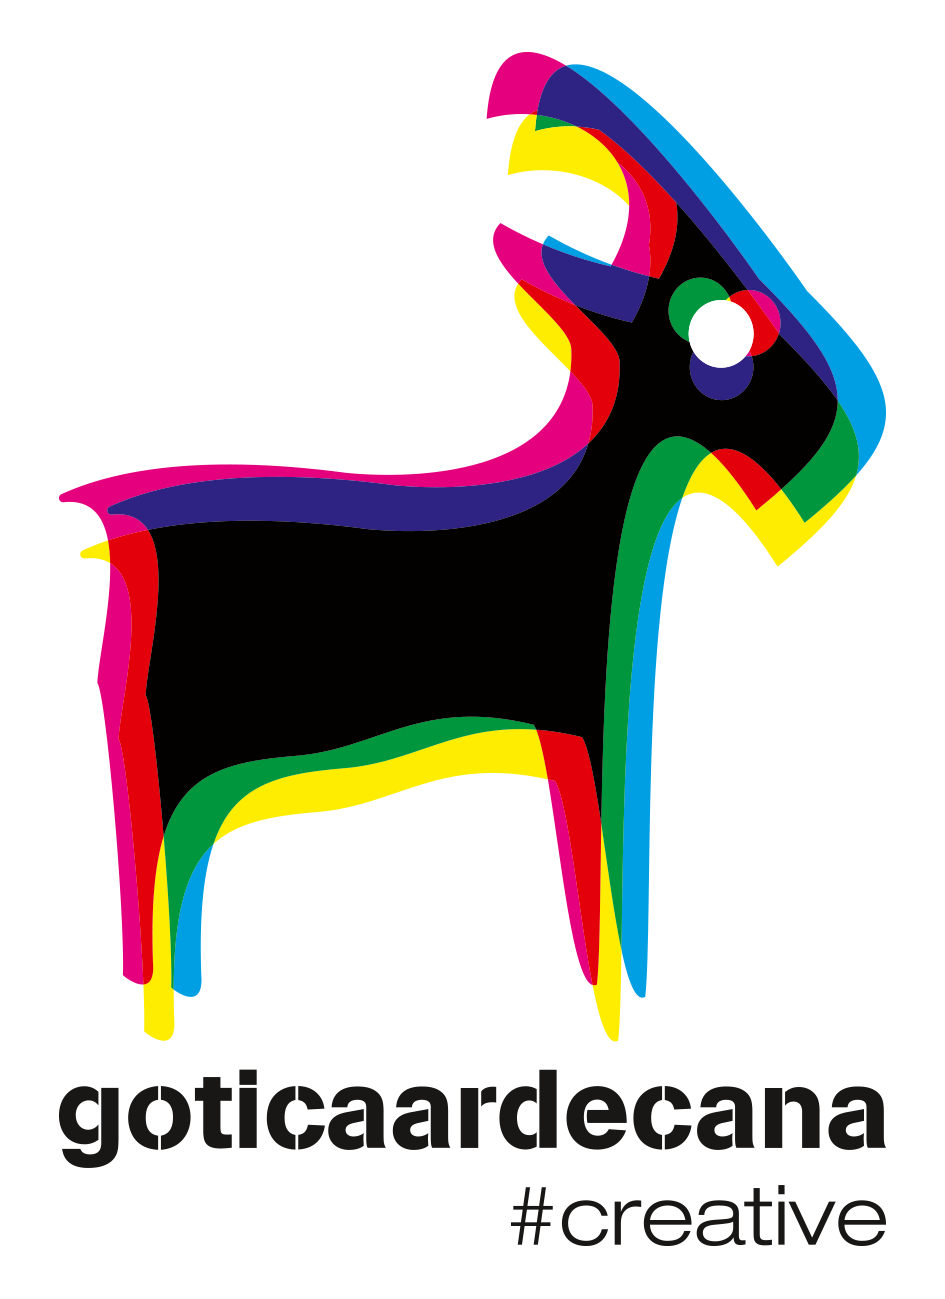 L-goticaardecana-creative-produit-vertical-RVB-2022-lga.png